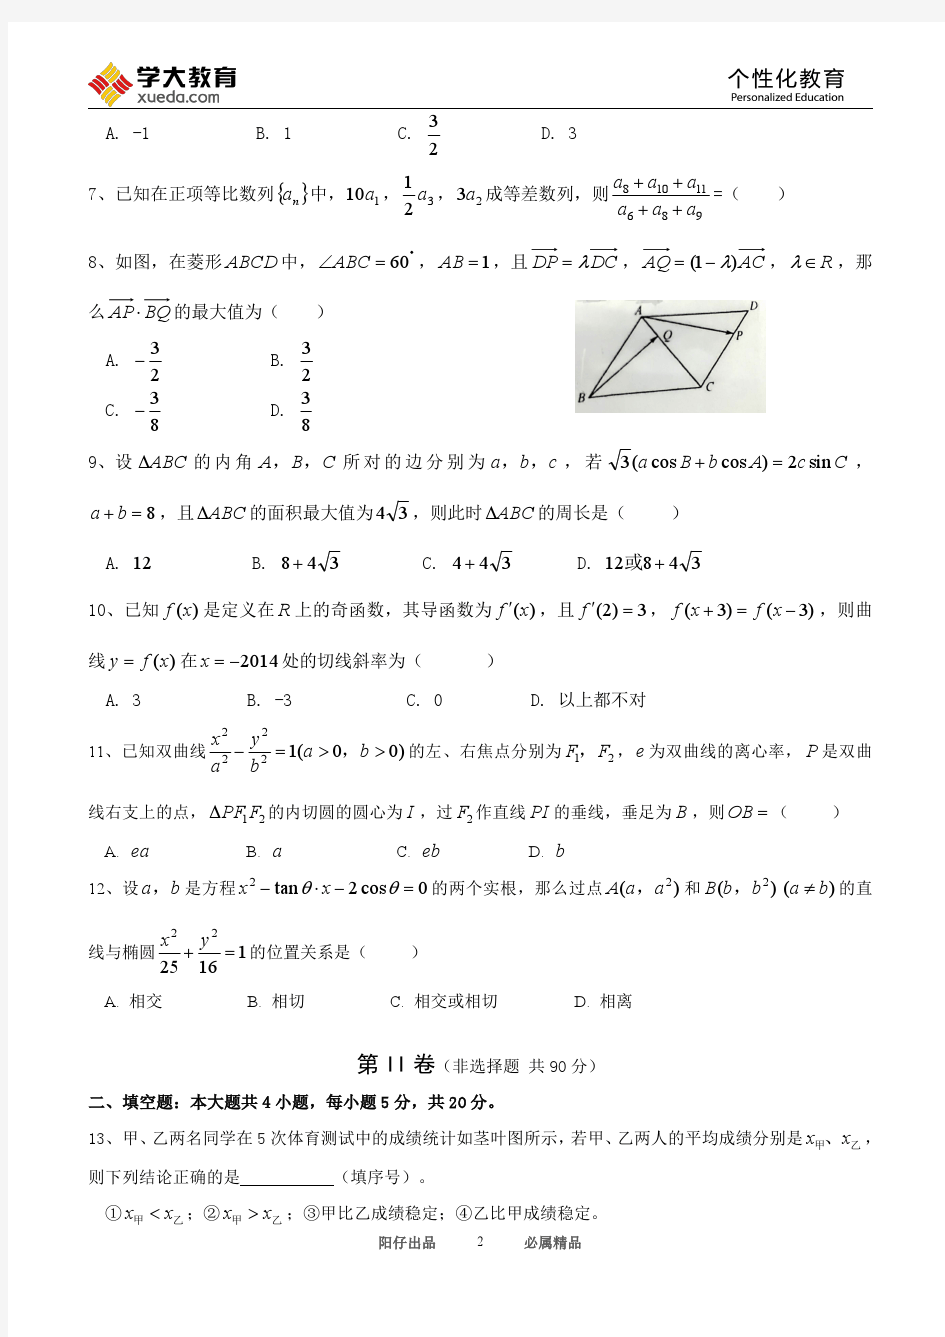 芜湖一中2016届高三年级统一测试数学文科试卷